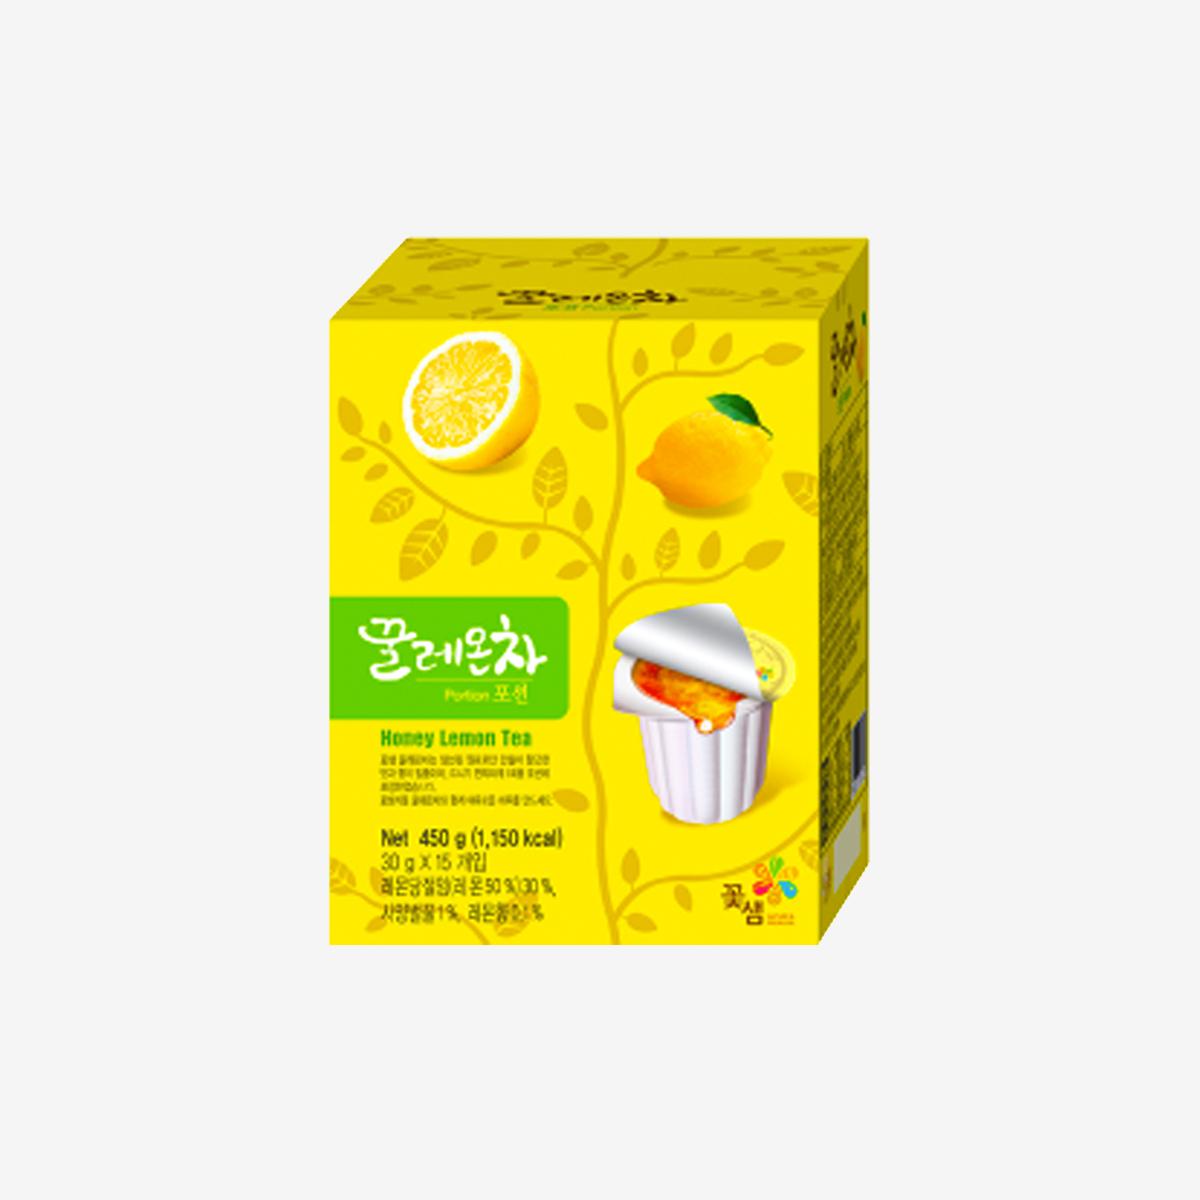 蜂蜜檸檬茶濃縮膠囊 (15個入)